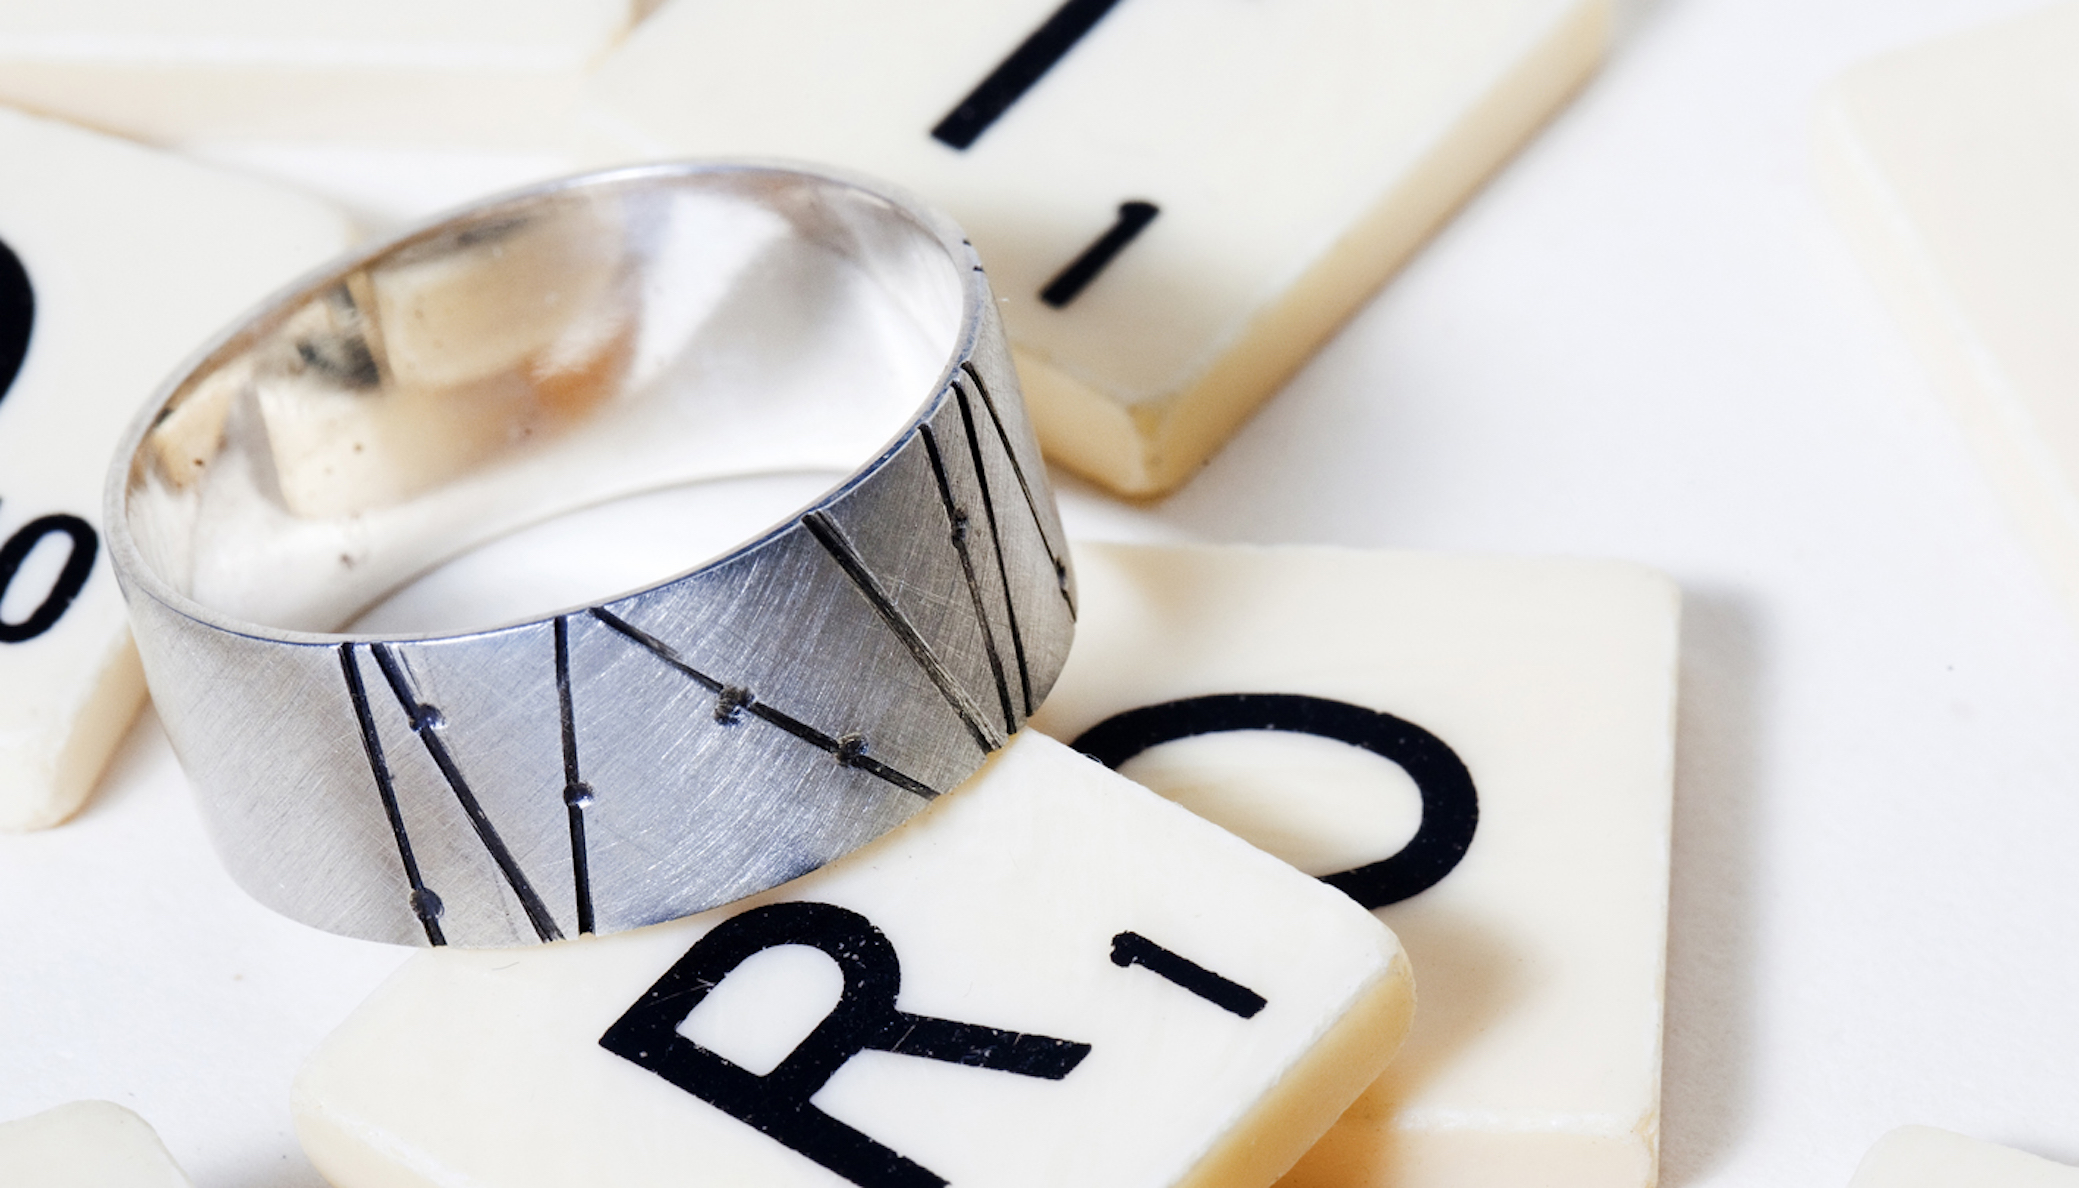 Unique wedding rings